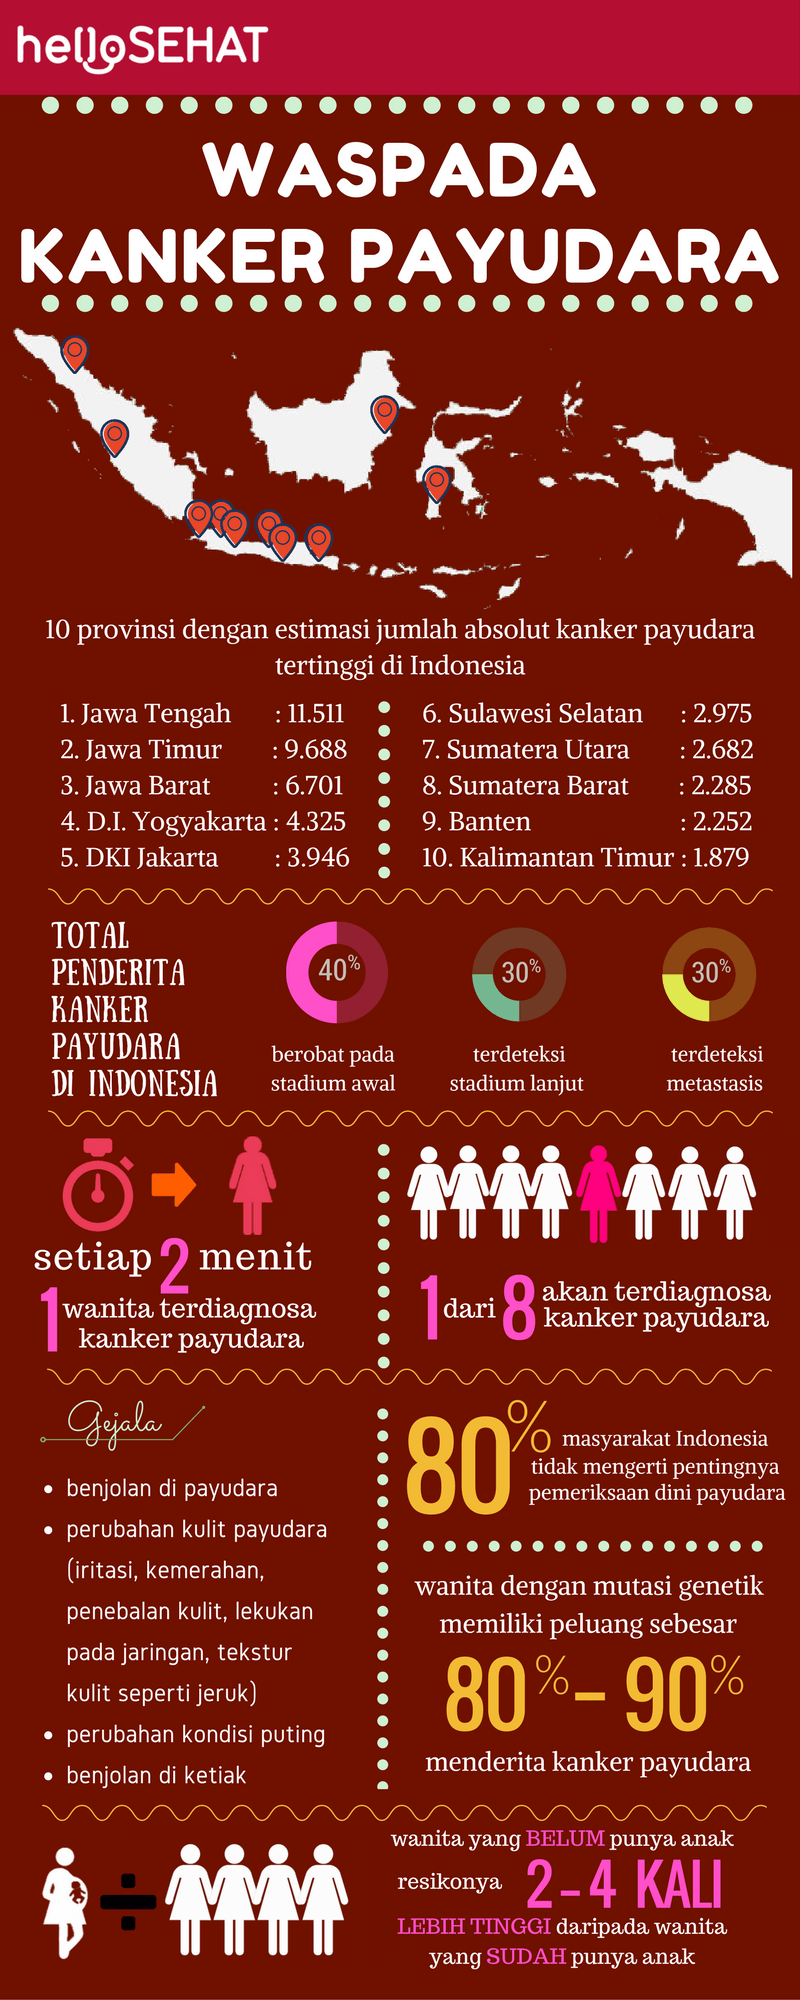 Hola infografía de cáncer de mama saludable en Indonesia